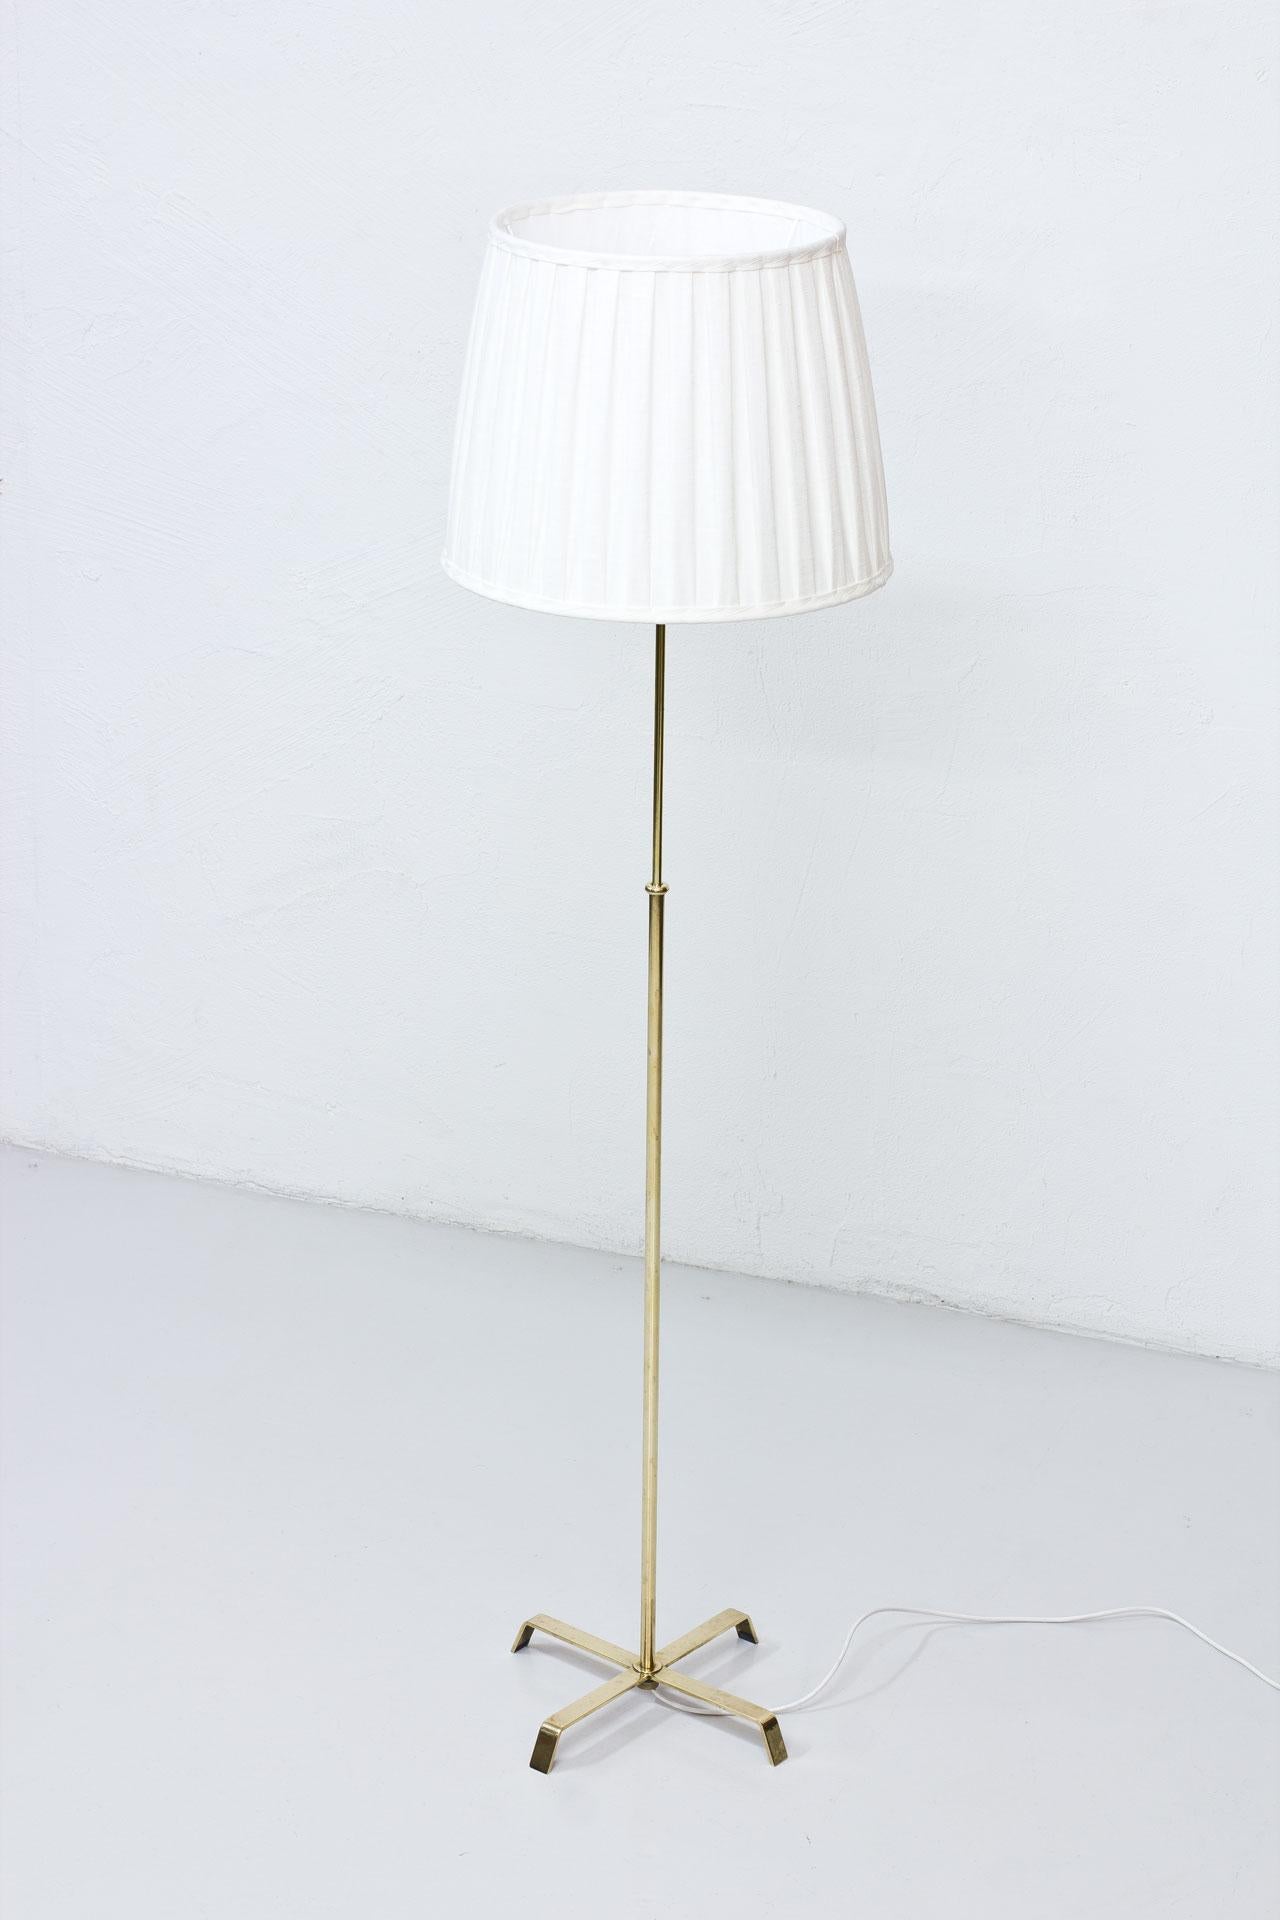 Stehleuchte, hergestellt in Schweden von Böhlmarks Lamp fabrik in den 1940er Jahren.  Gefertigt aus Messing mit handgefaltetem Lampenschirm aus Leinenstoff.
Die Höhe des Stiels ist einstellbar. Unterhalb des Sockels eingraviert.
